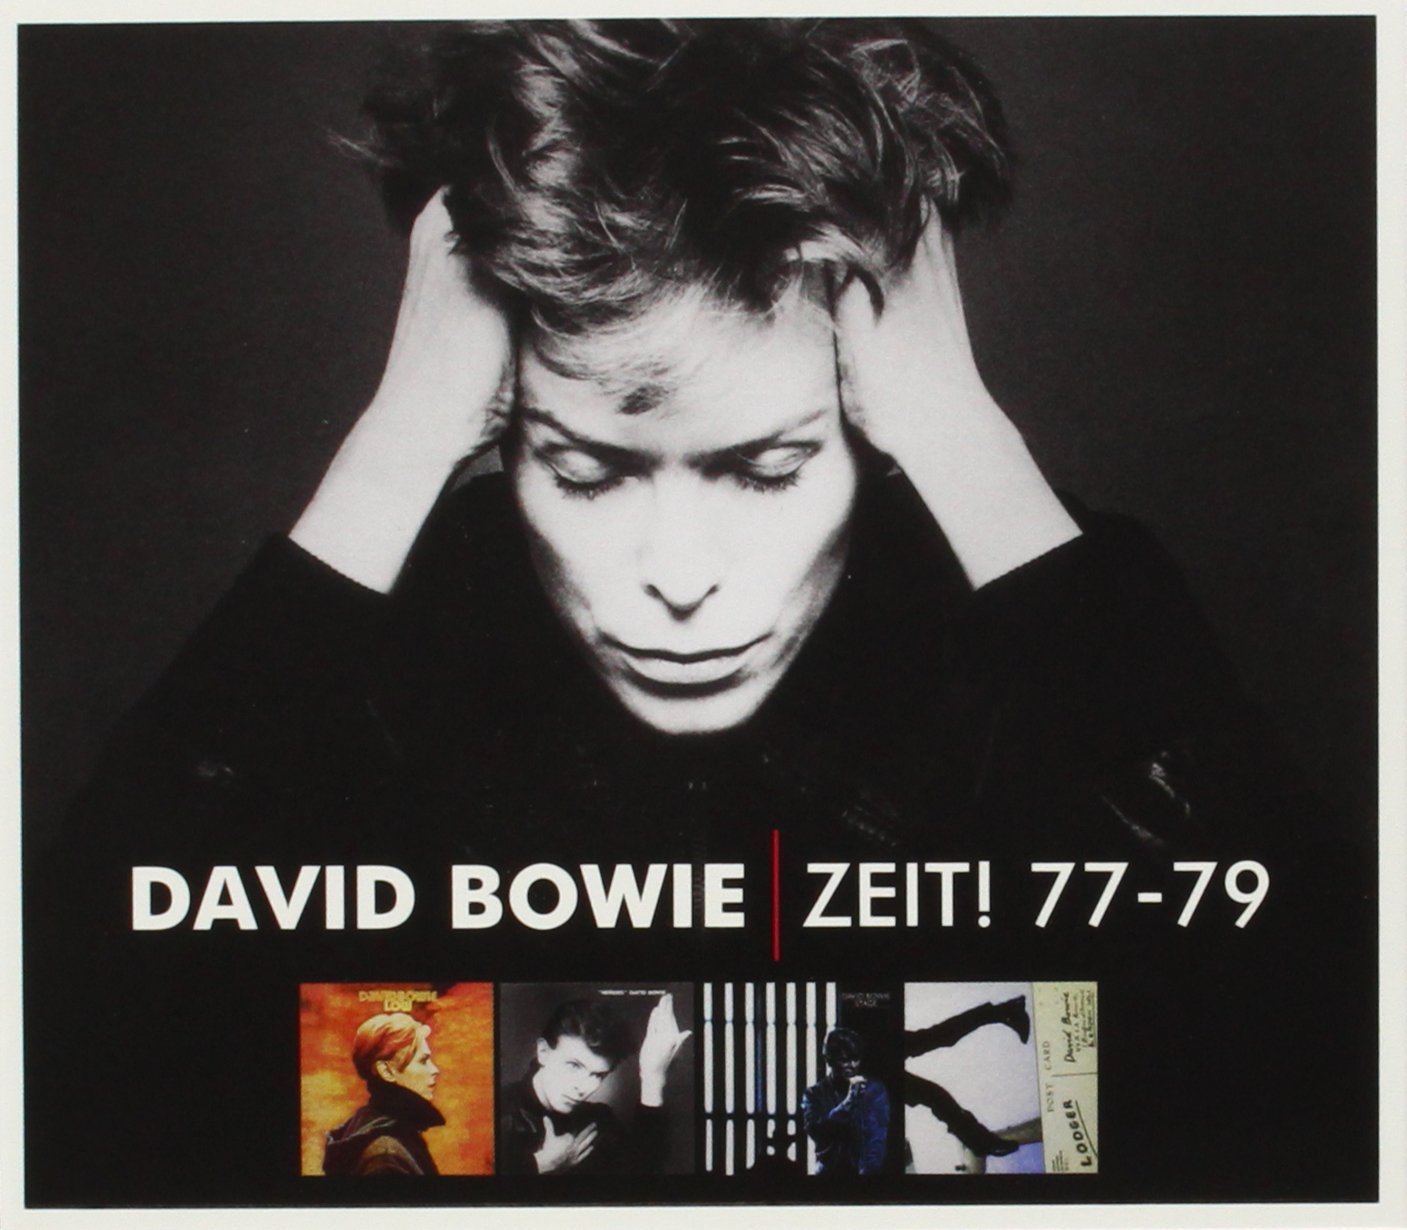 David Bowie "Zeit! 77-79" CD